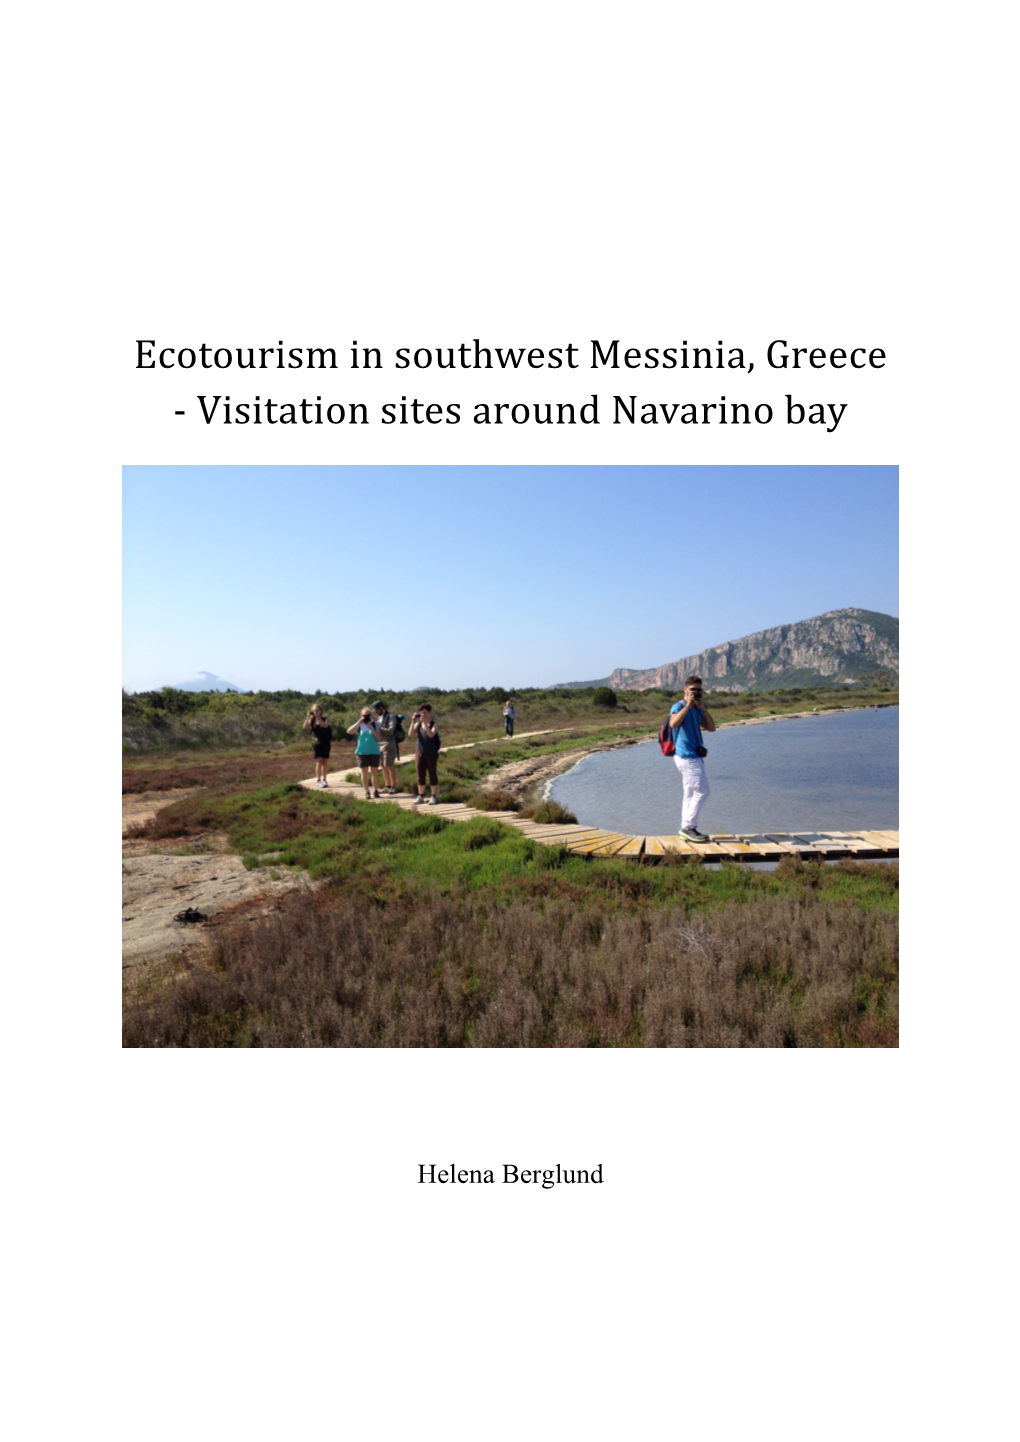 Ecotourism in Southwest Messinia, Greece - Visitation Sites Around Navarino Bay